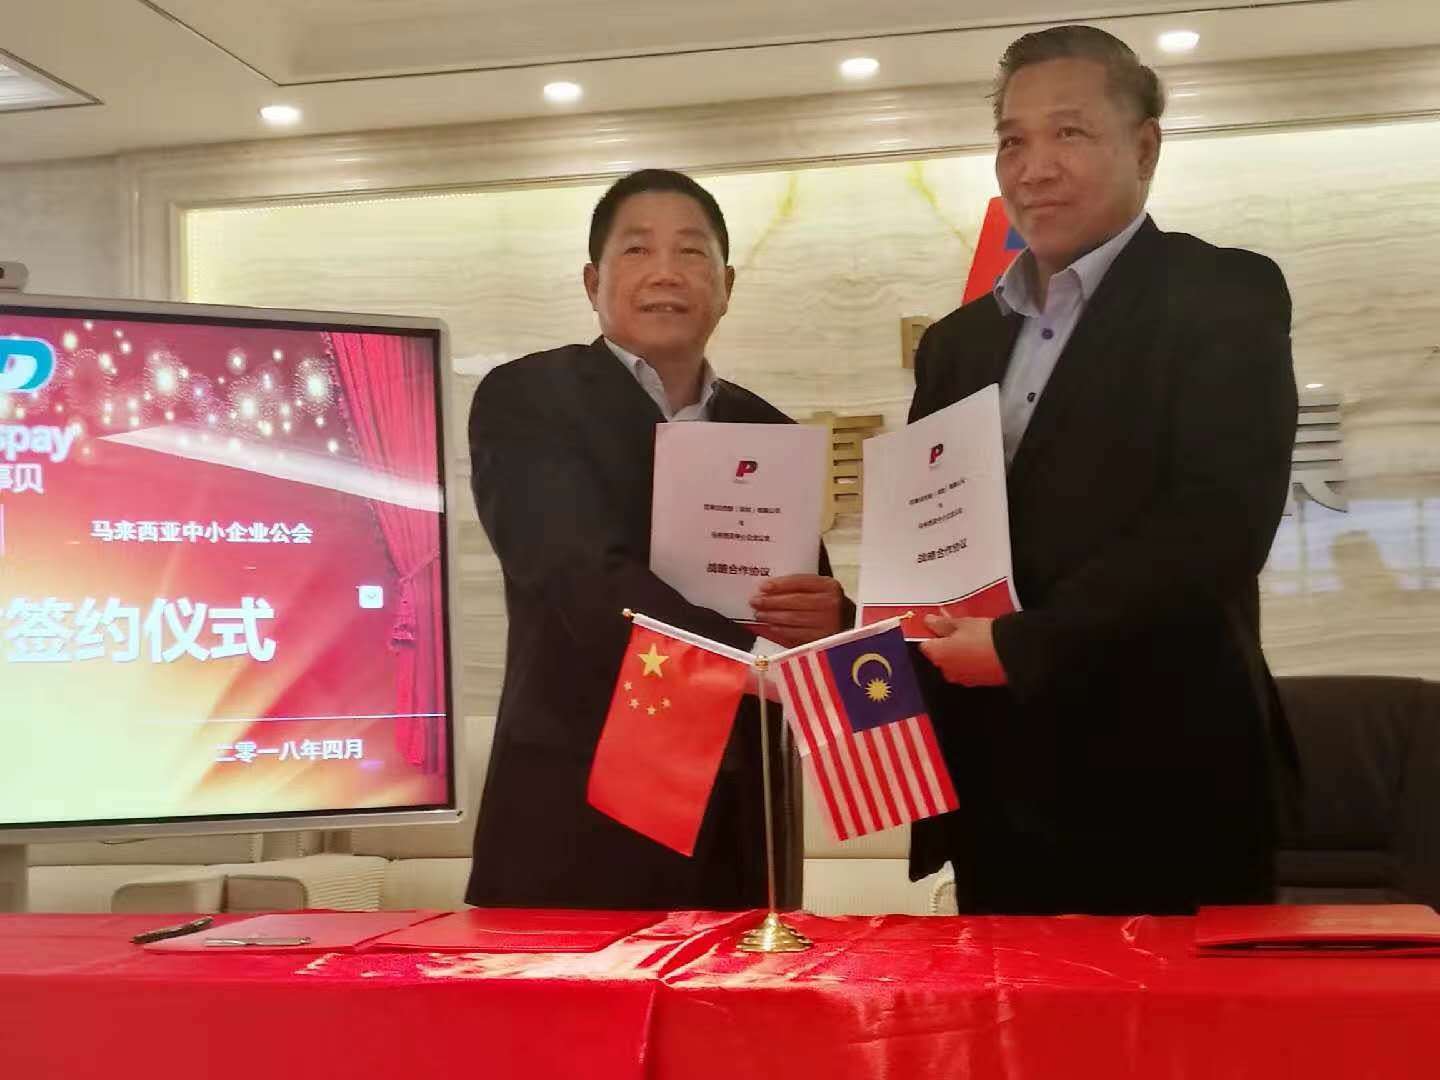 百事贝集团签约马来西亚中小企业公会,为65万